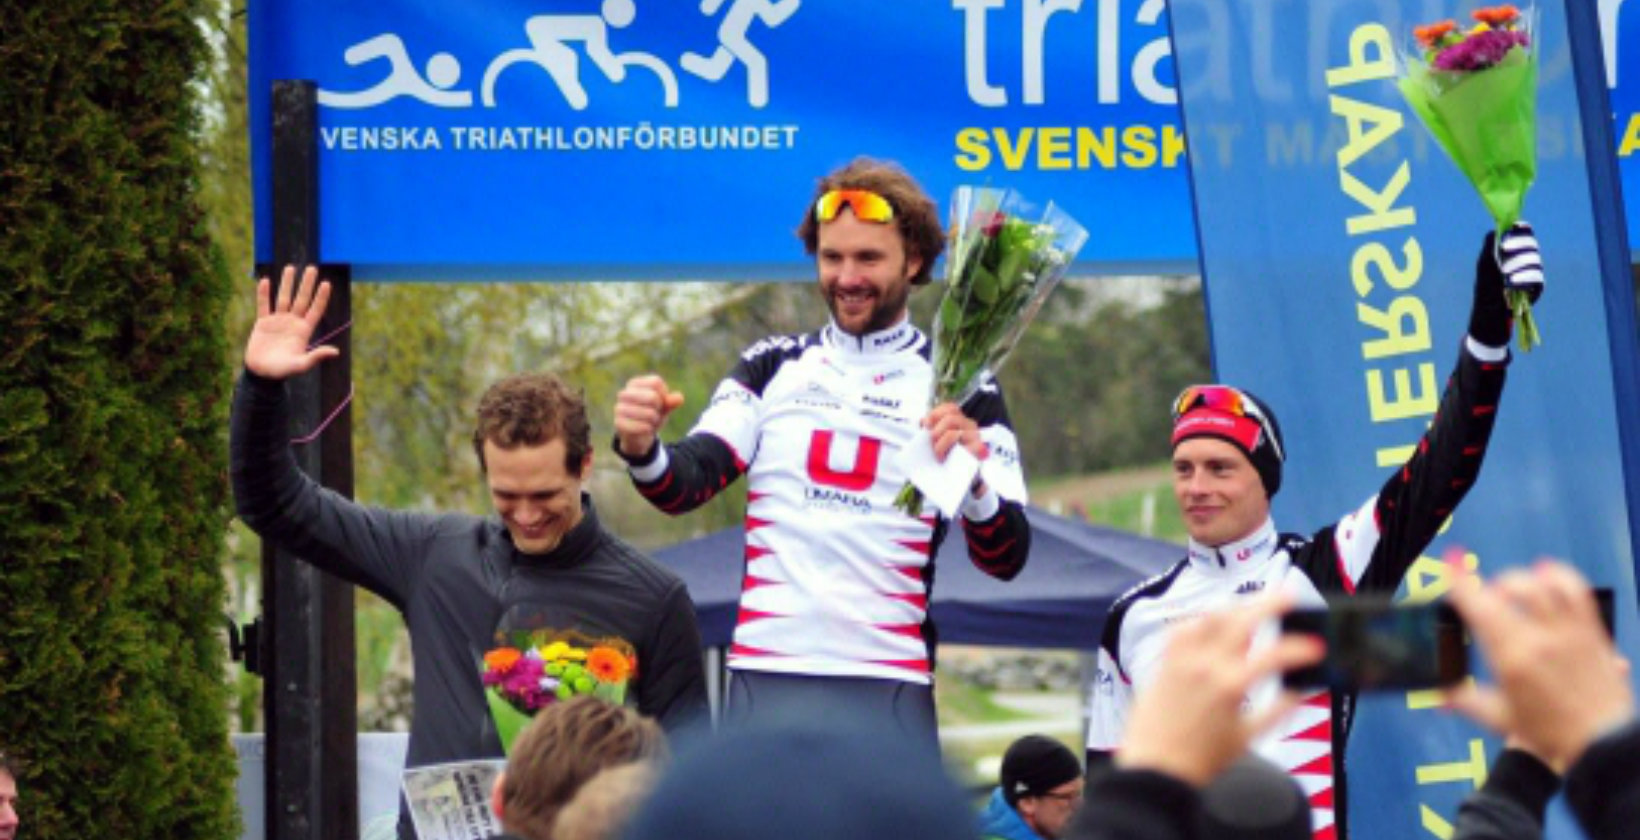 Foto: Kalle Kemppainen / Svenska Triathlonförbundet